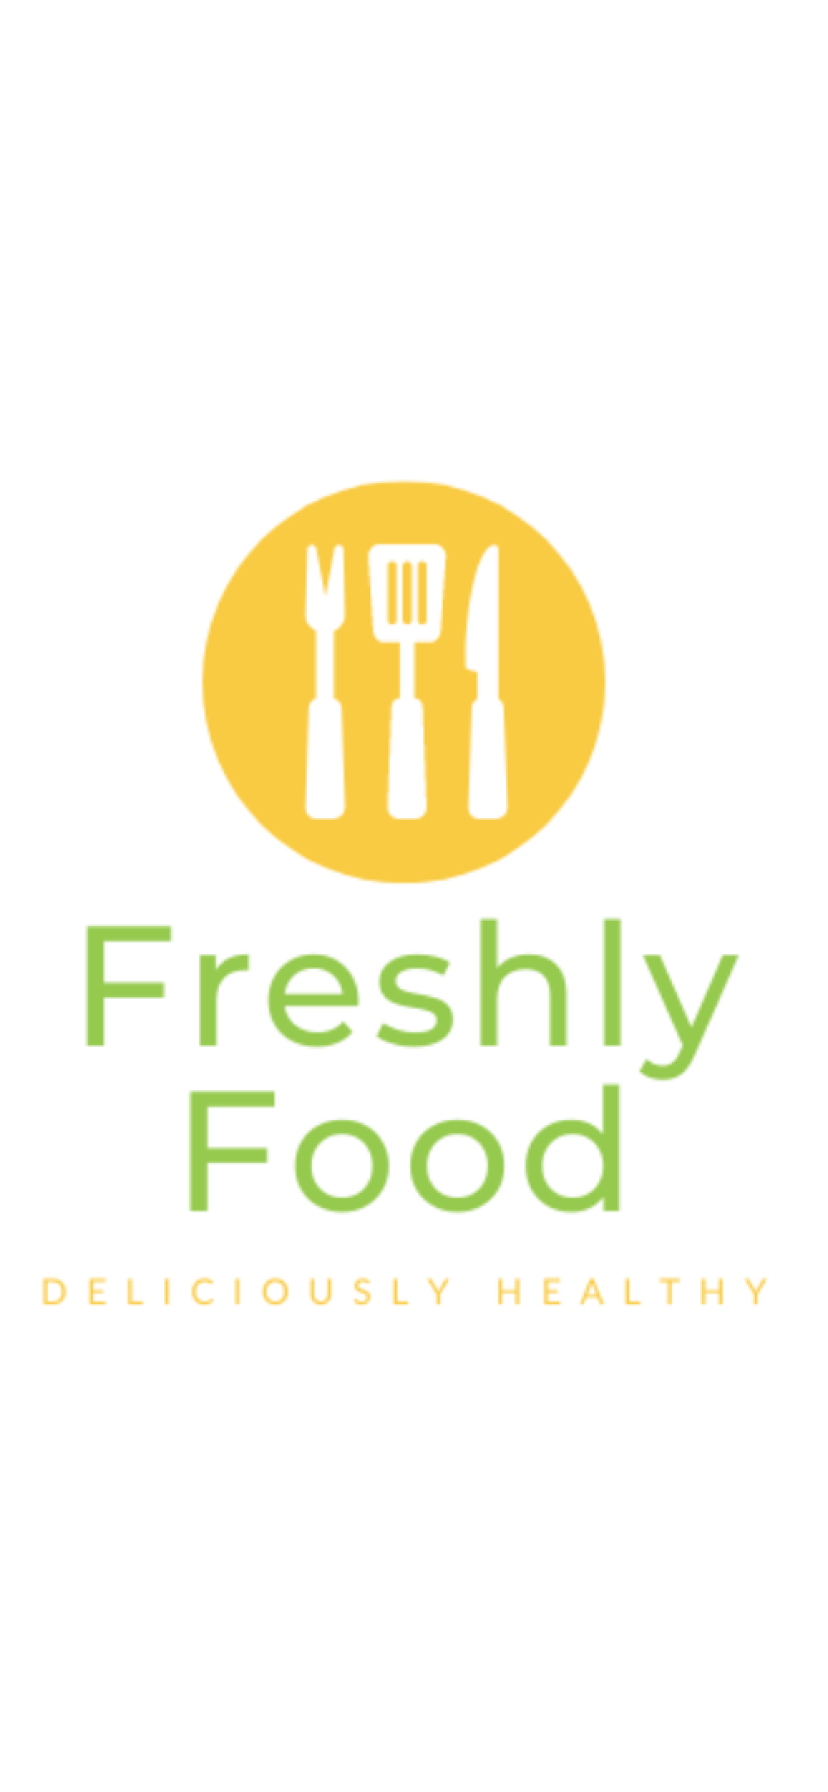 Freshlyfood.com domain name for sale